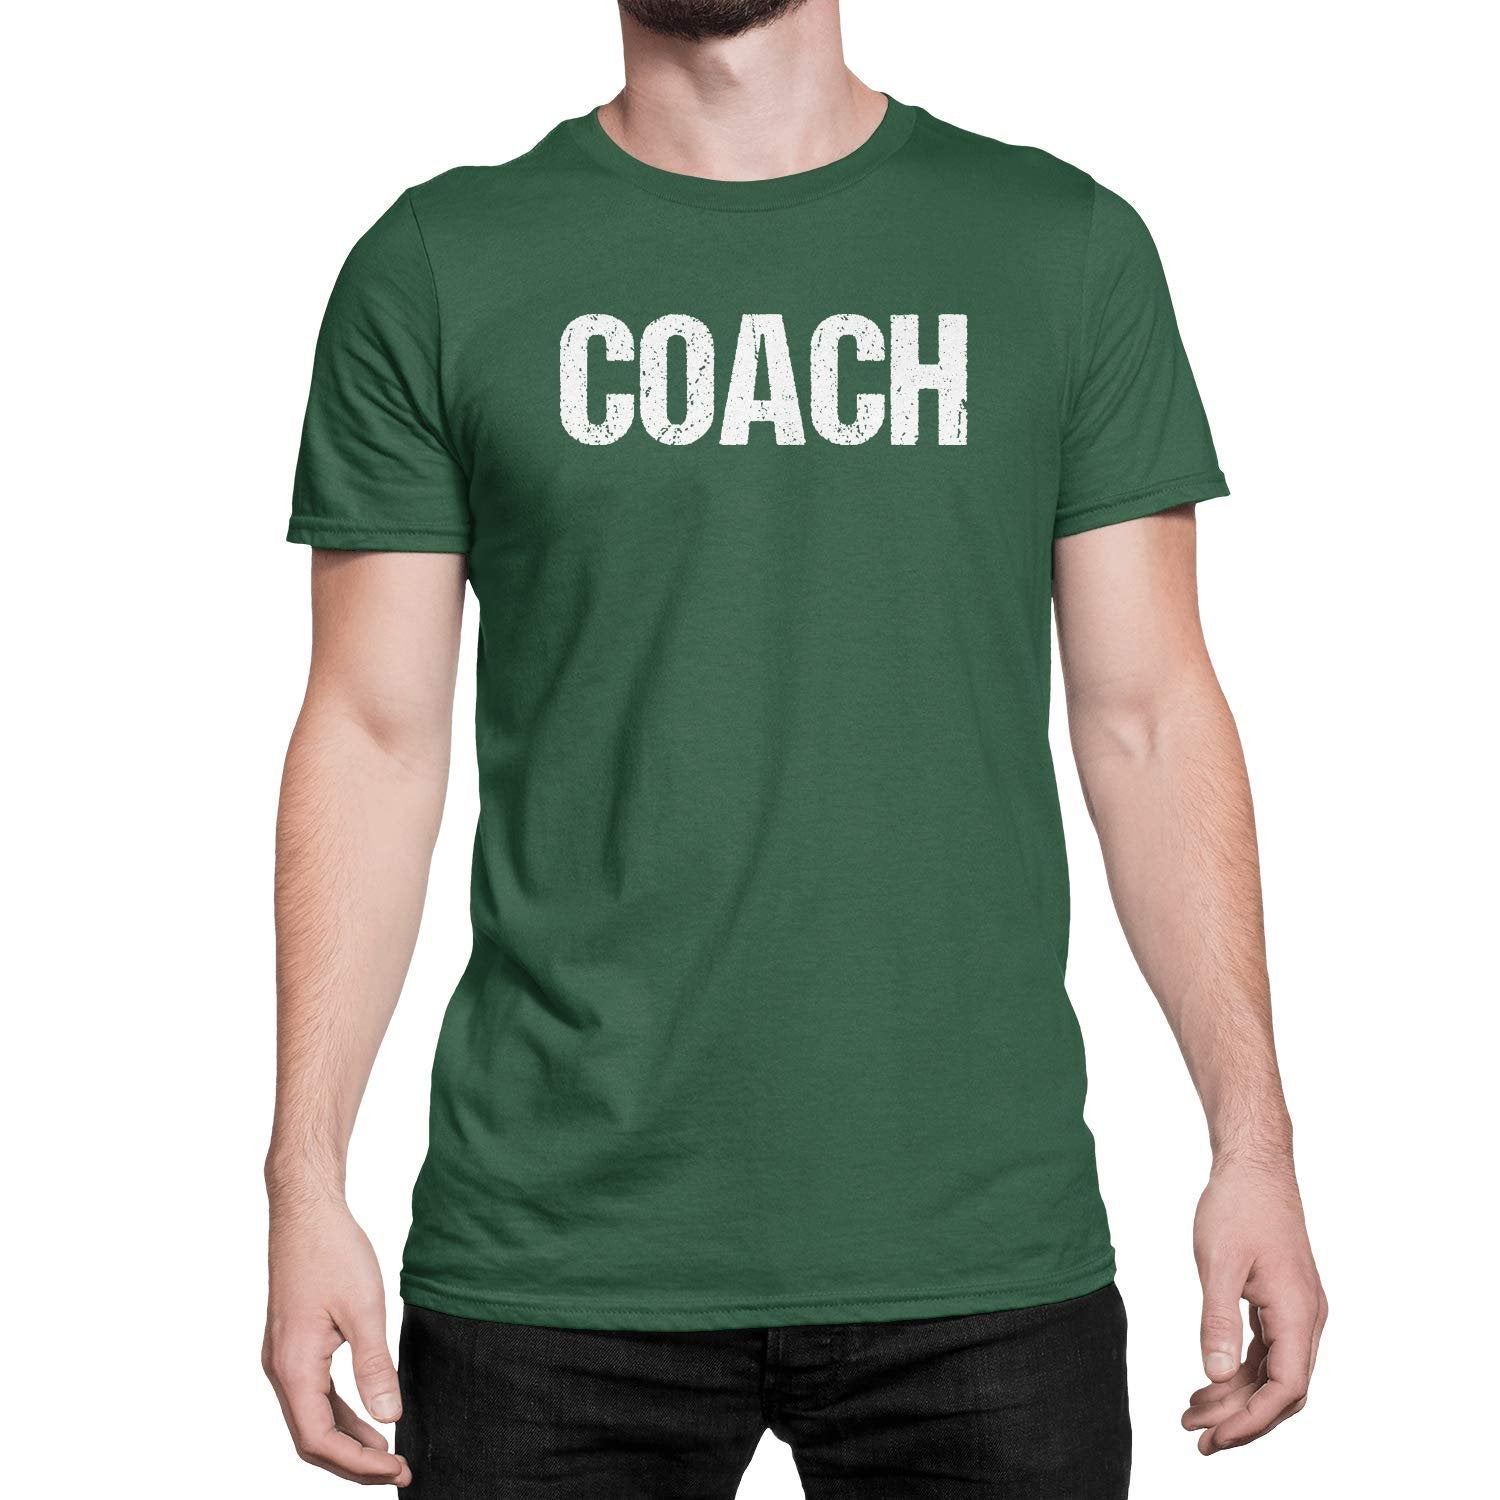 Coach T-Shirt Sports Coaching Tee Shirt (Green & White, Distressed)